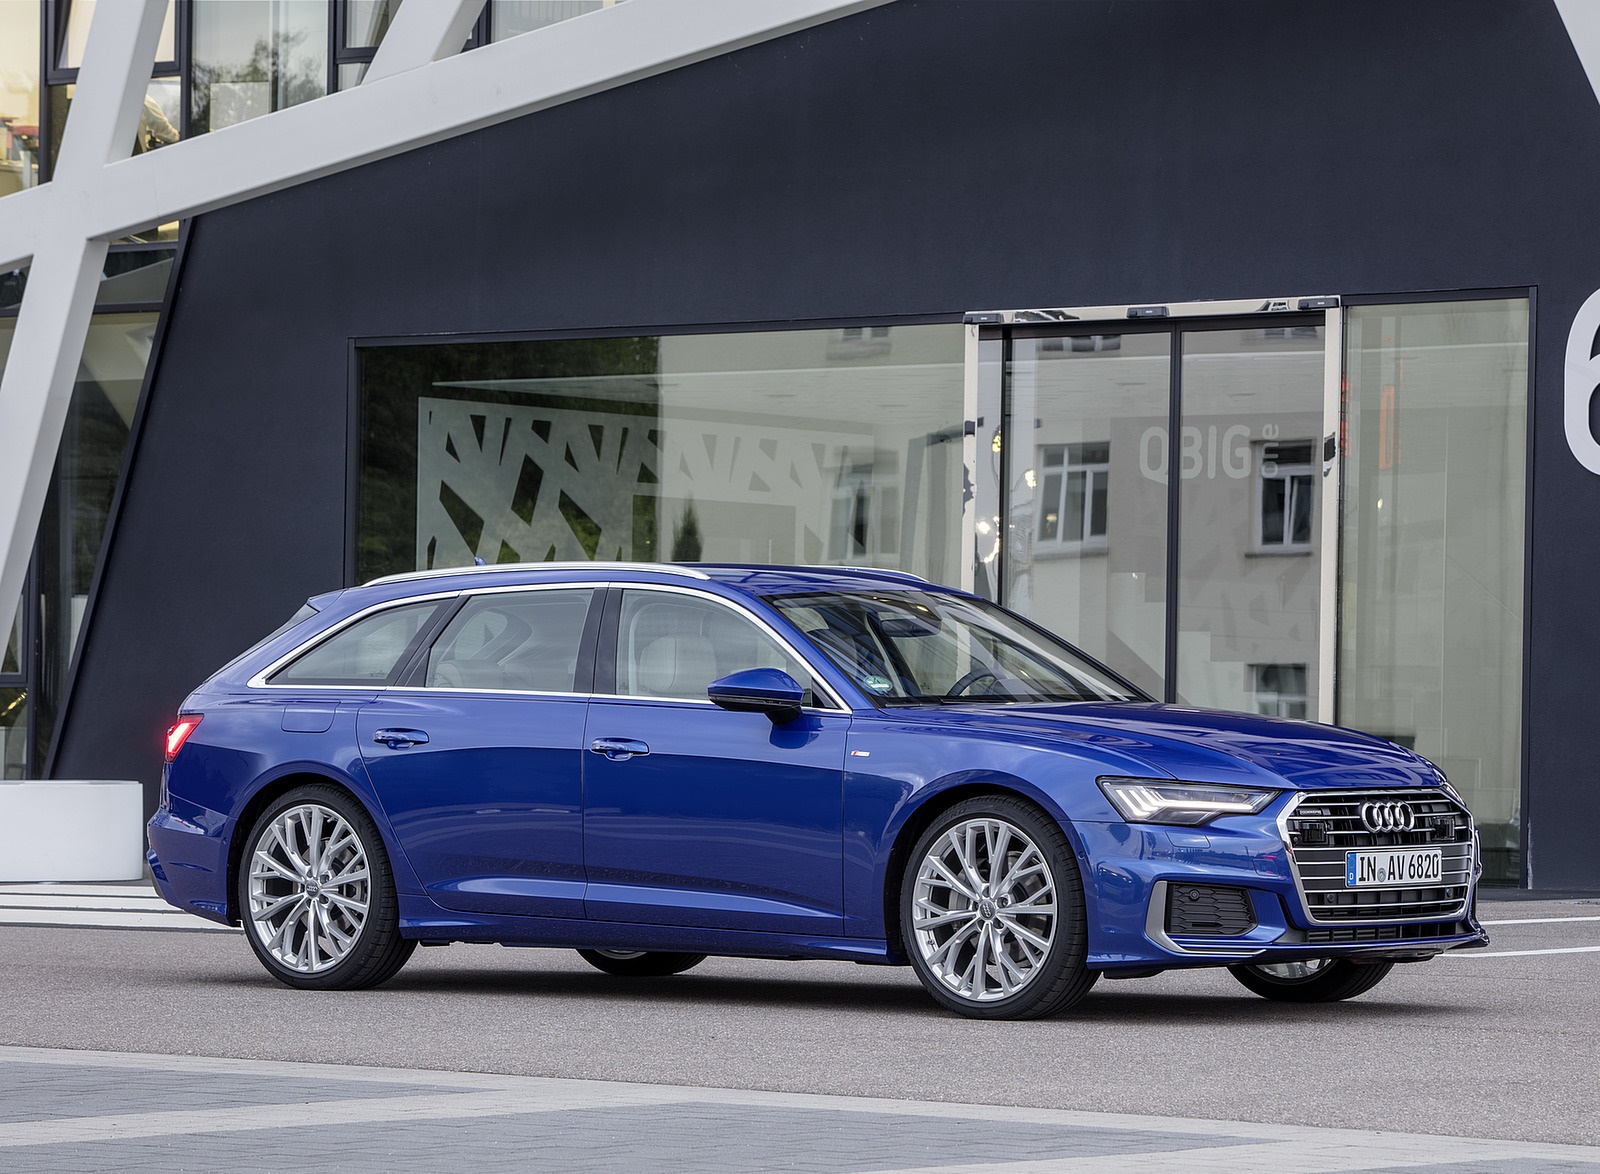 2019 Audi A6 Avant (Color: Sepang Blue) Front Three-Quarter Wallpapers #35 of 86